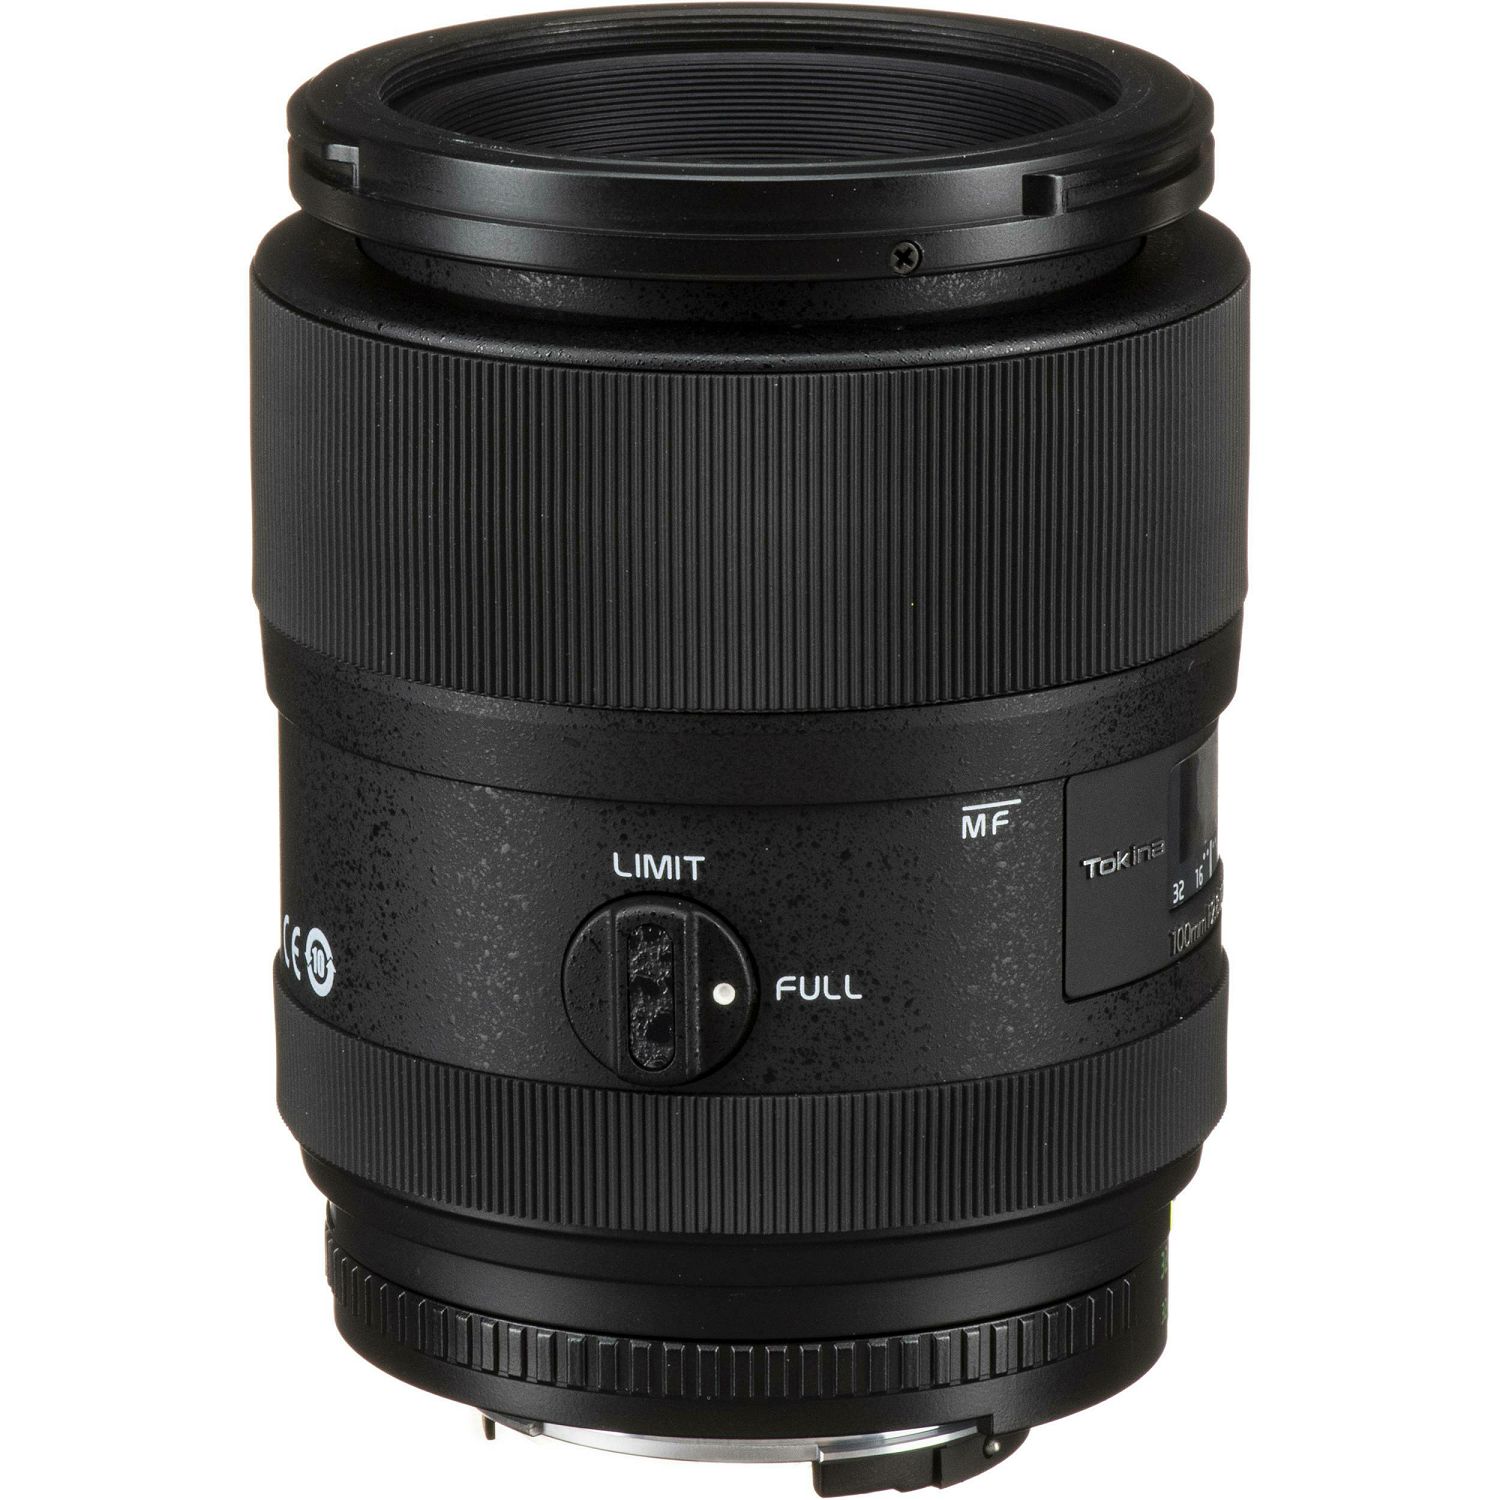 Tokina ATX-i 100mm f/2.8 FF Macro objektiv za Nikon FX (T510003iN)